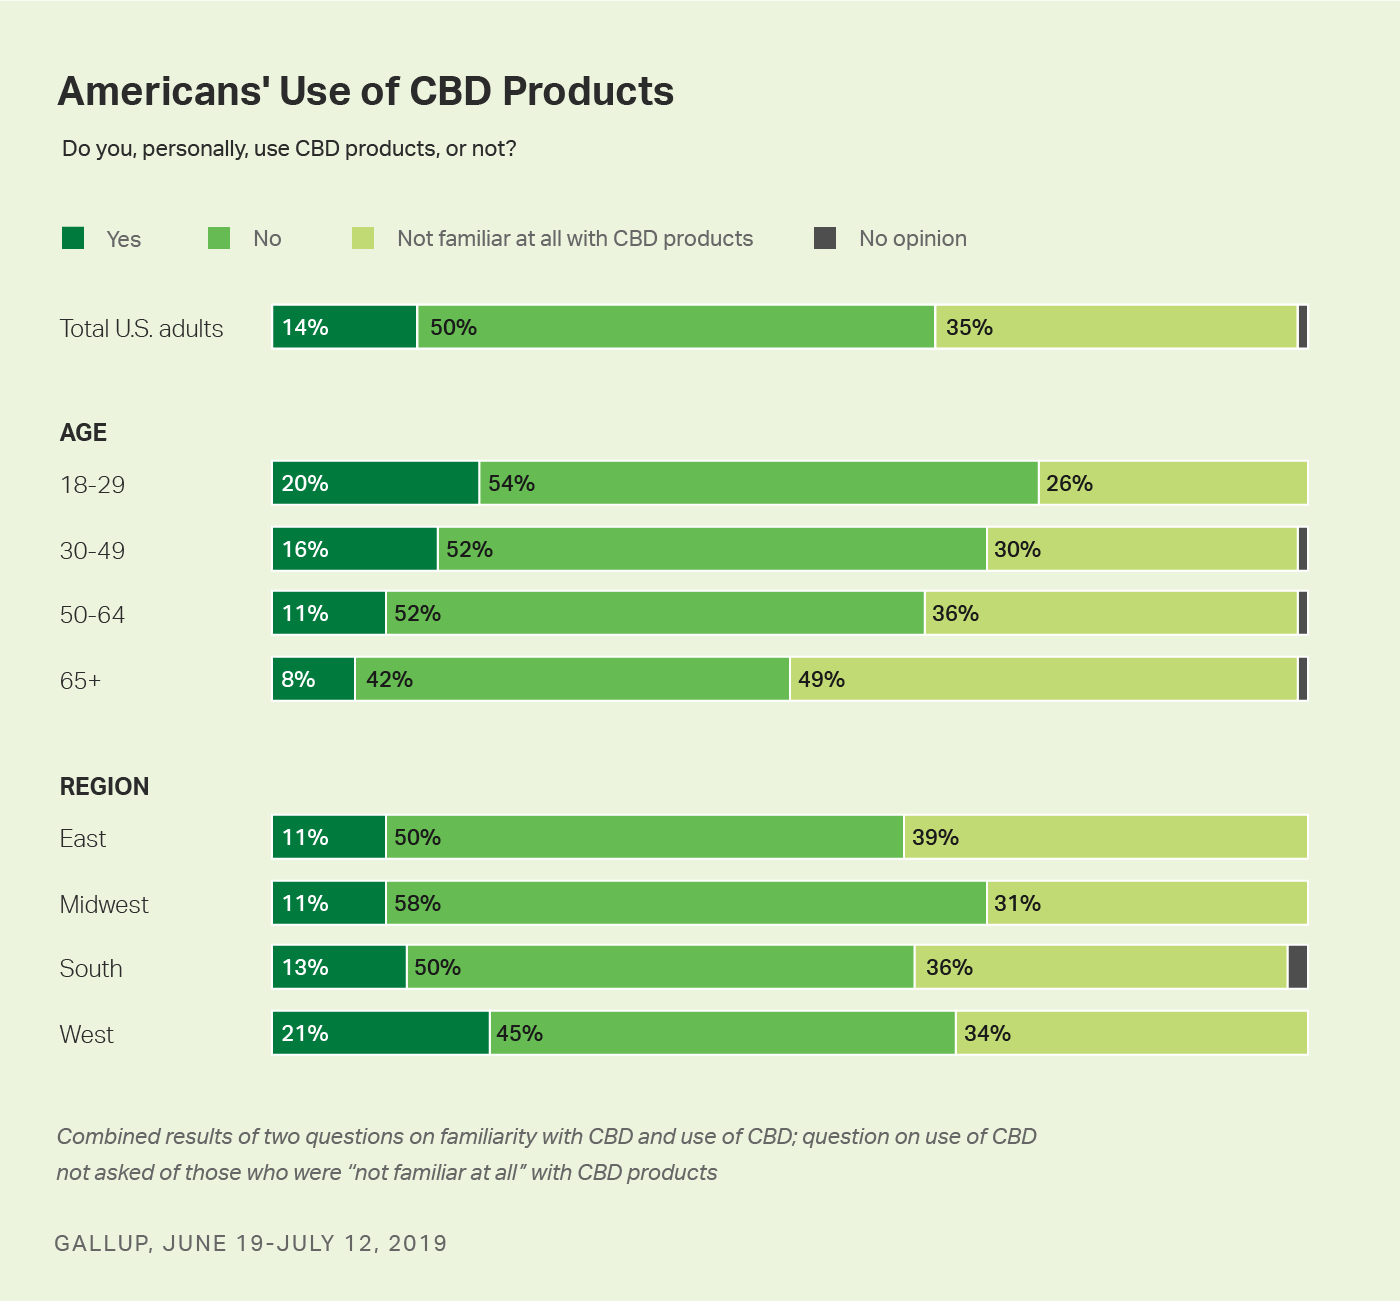 Sloupcové grafy. Používání produktů na bázi CBD samostatně uváděných mezi všemi dospělými, rozdělených podle věkových skupin a regionálních oblastí.